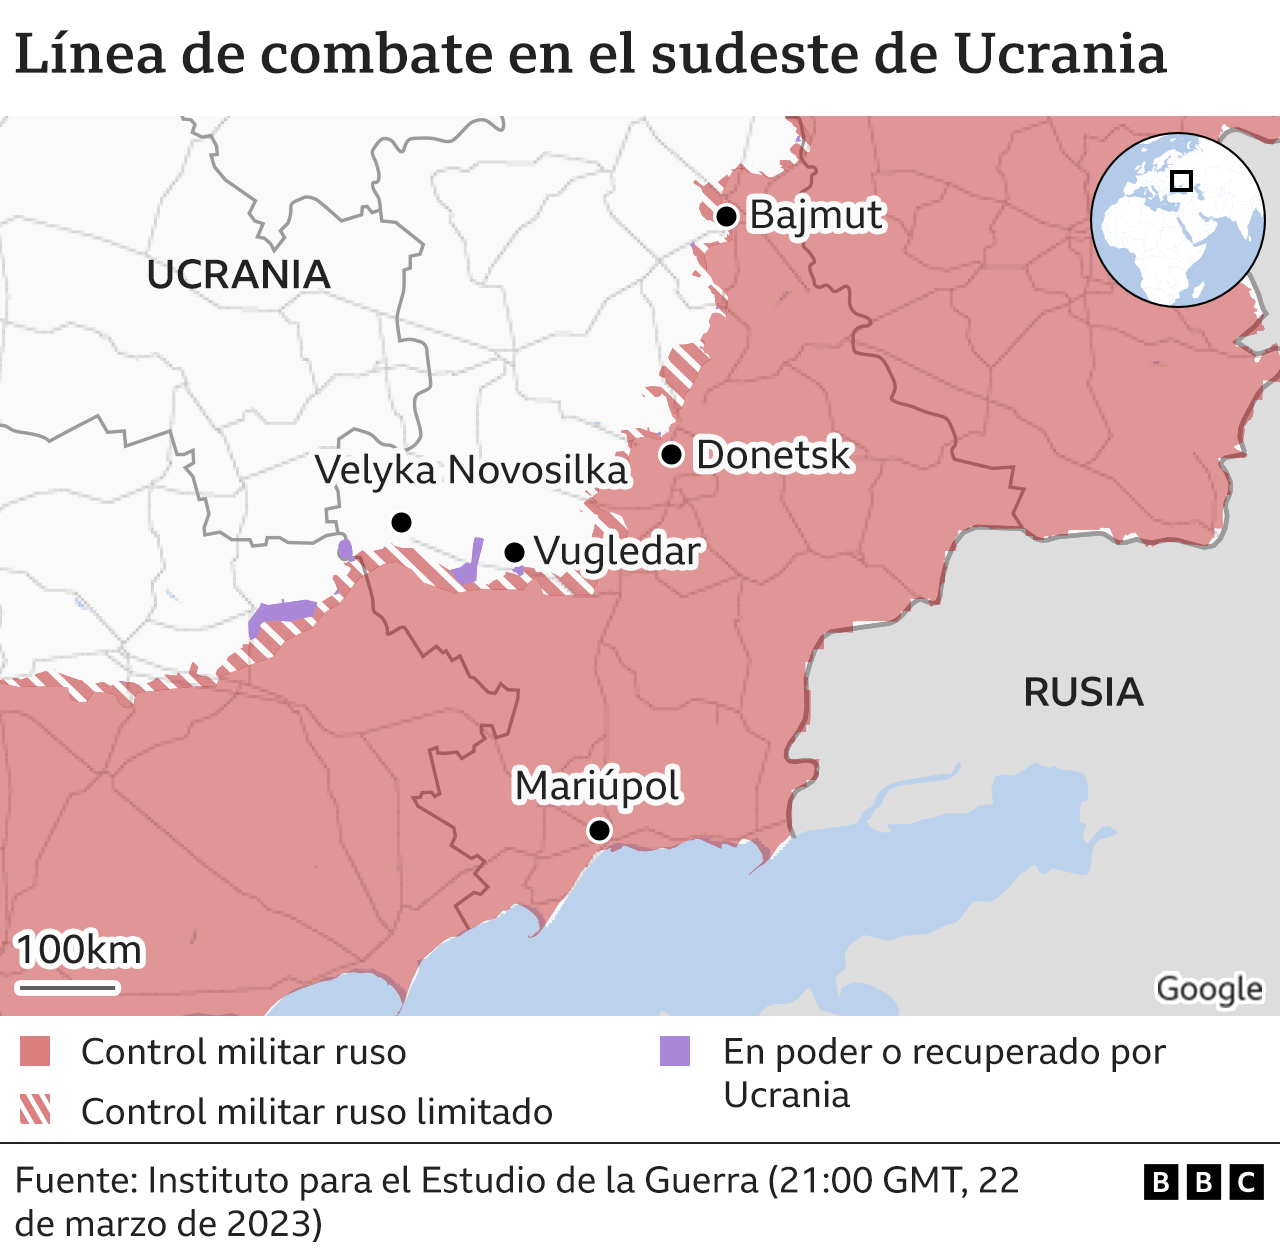 Mapa de la línea de combate en el sudeste de Ucrania.